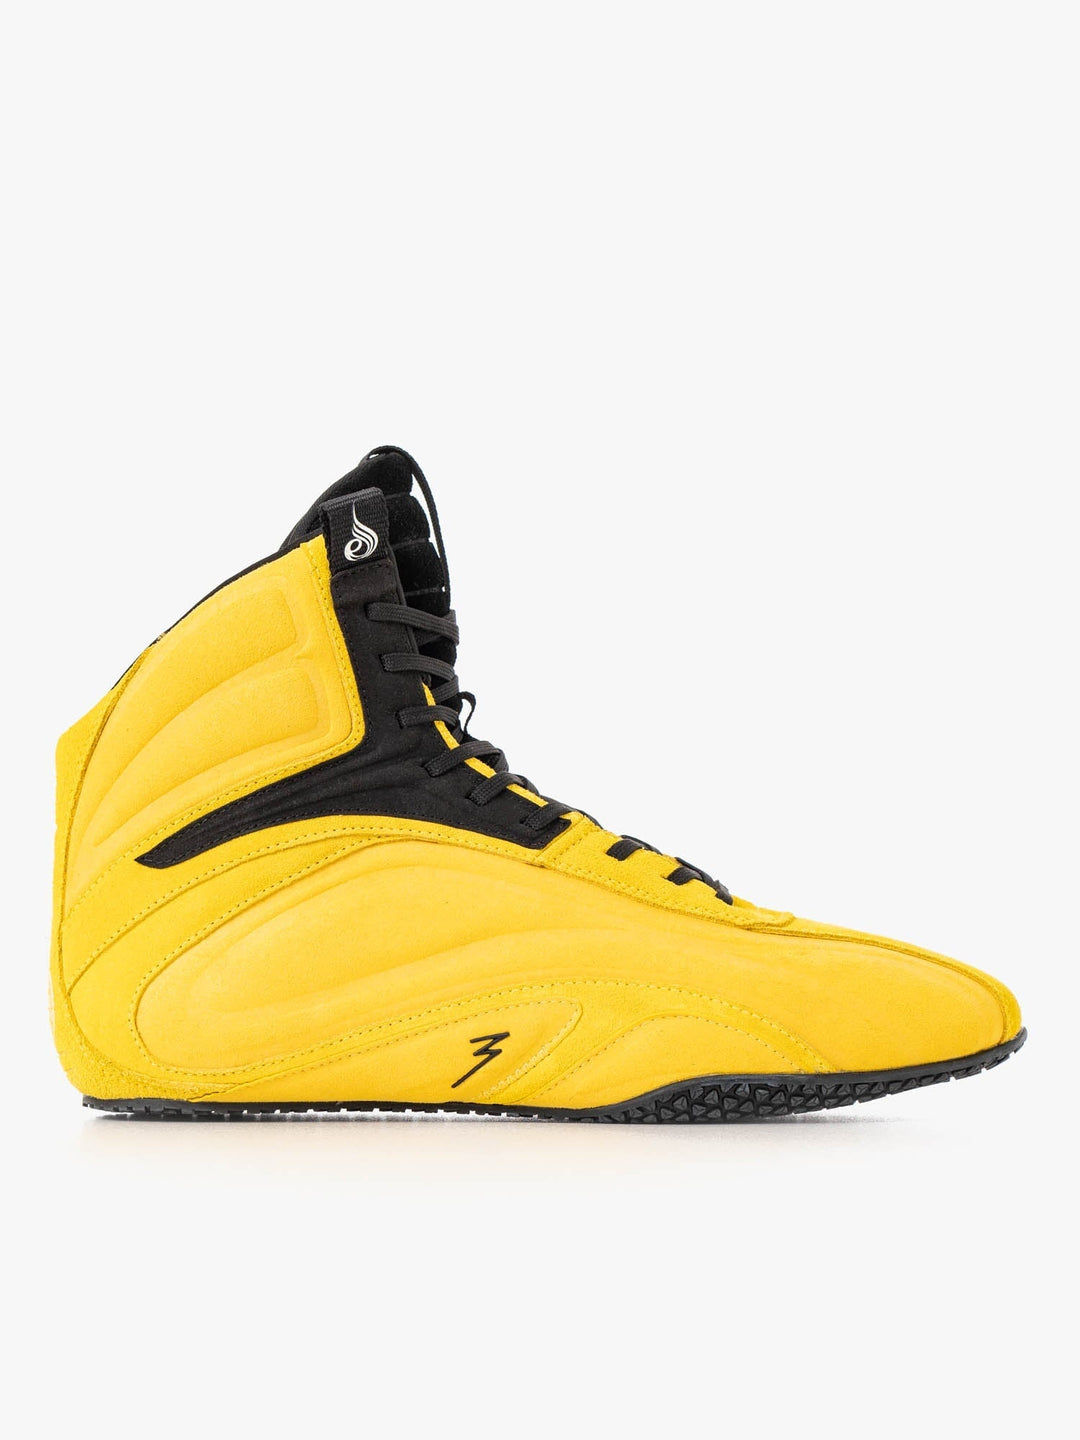 D-Mak 3 - Yellow Shoes Ryderwear 